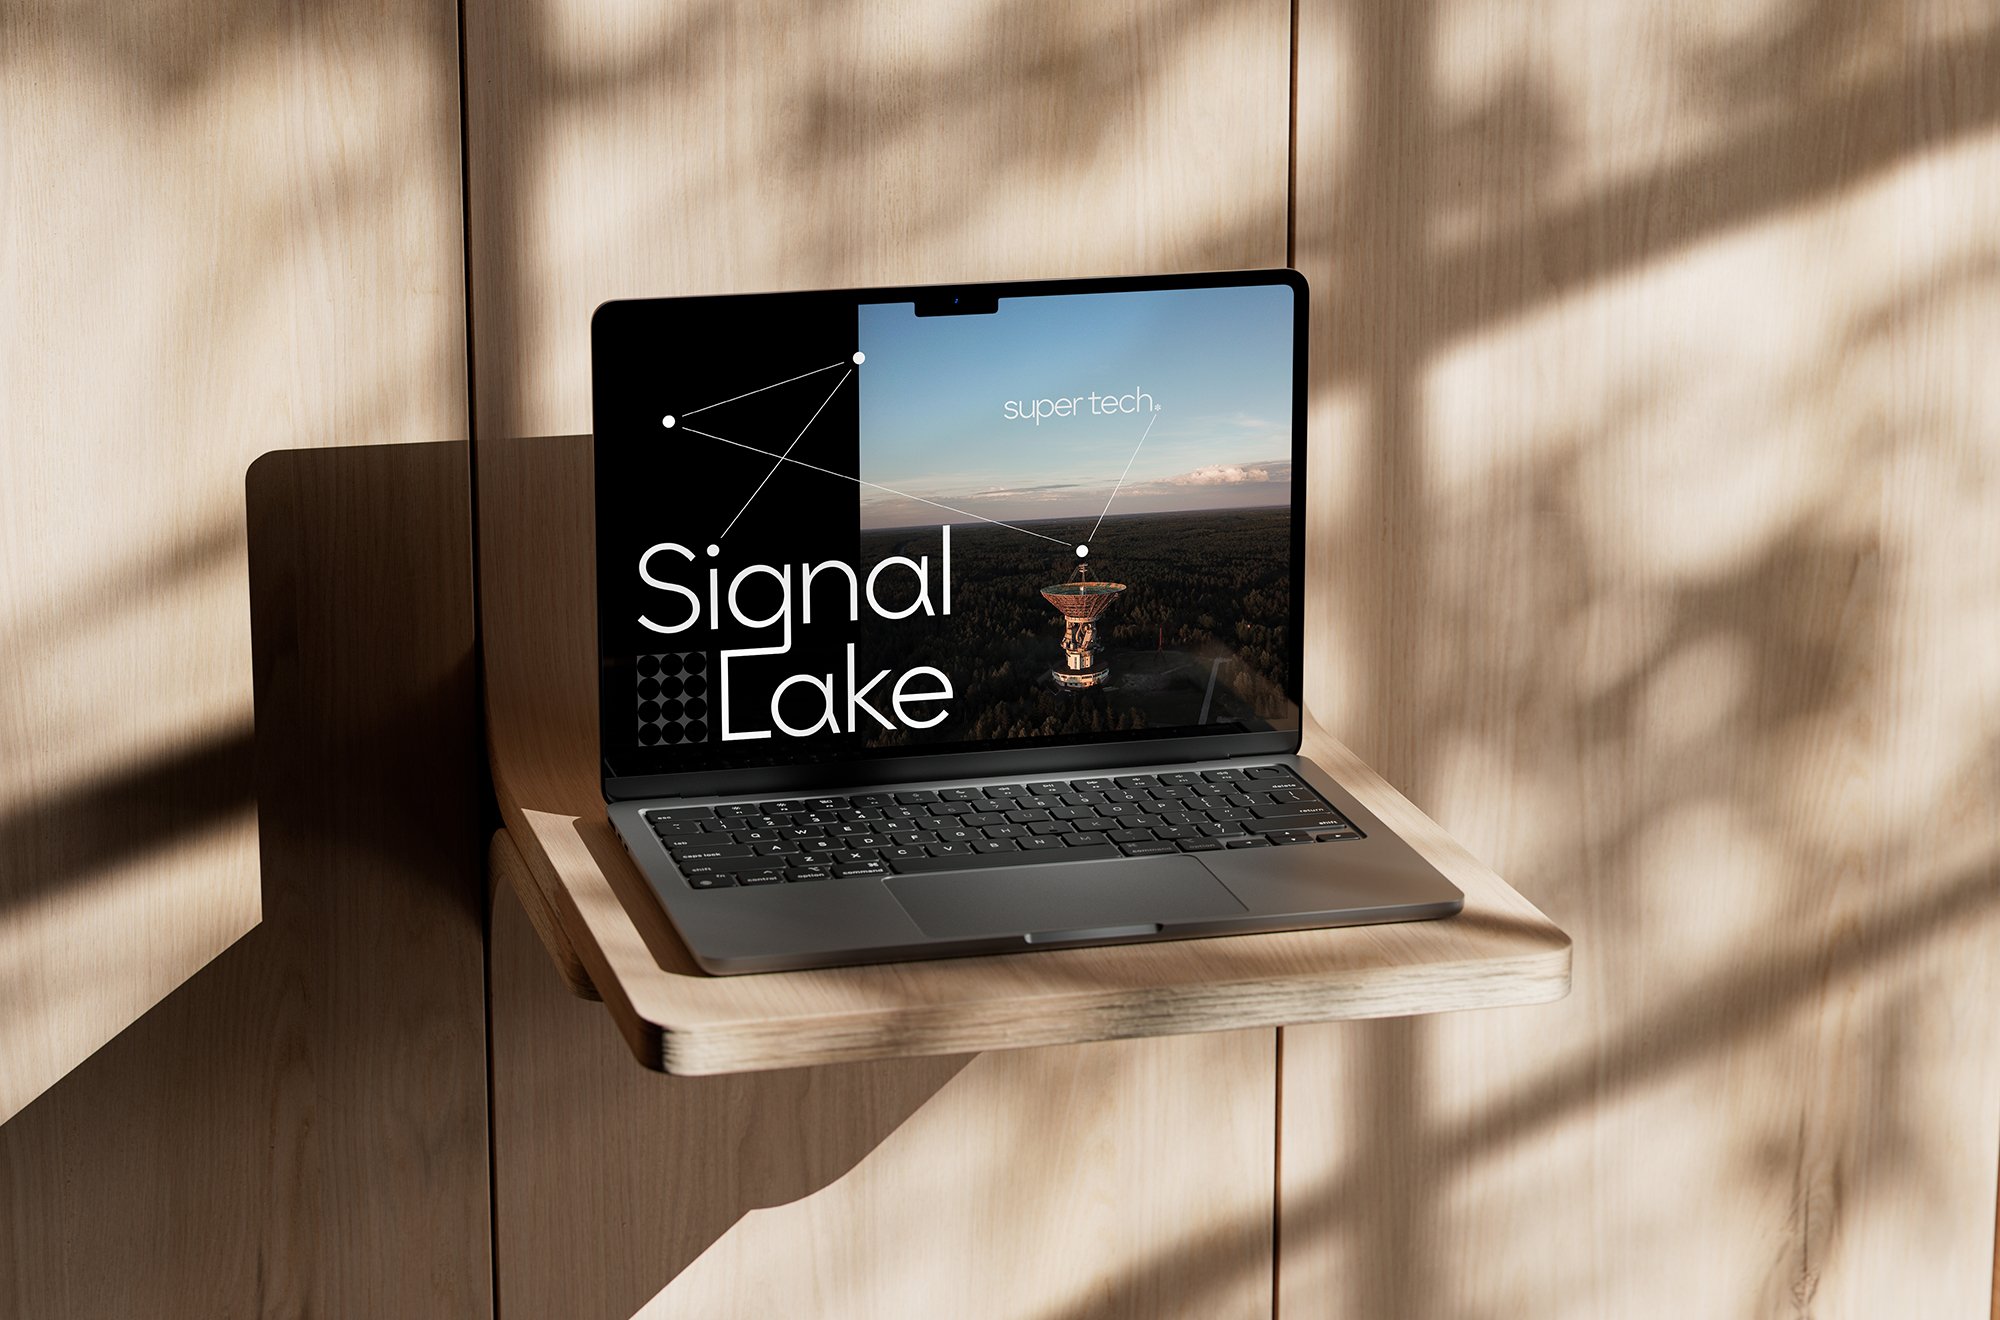 signal lake laptop 1-web72.jpg